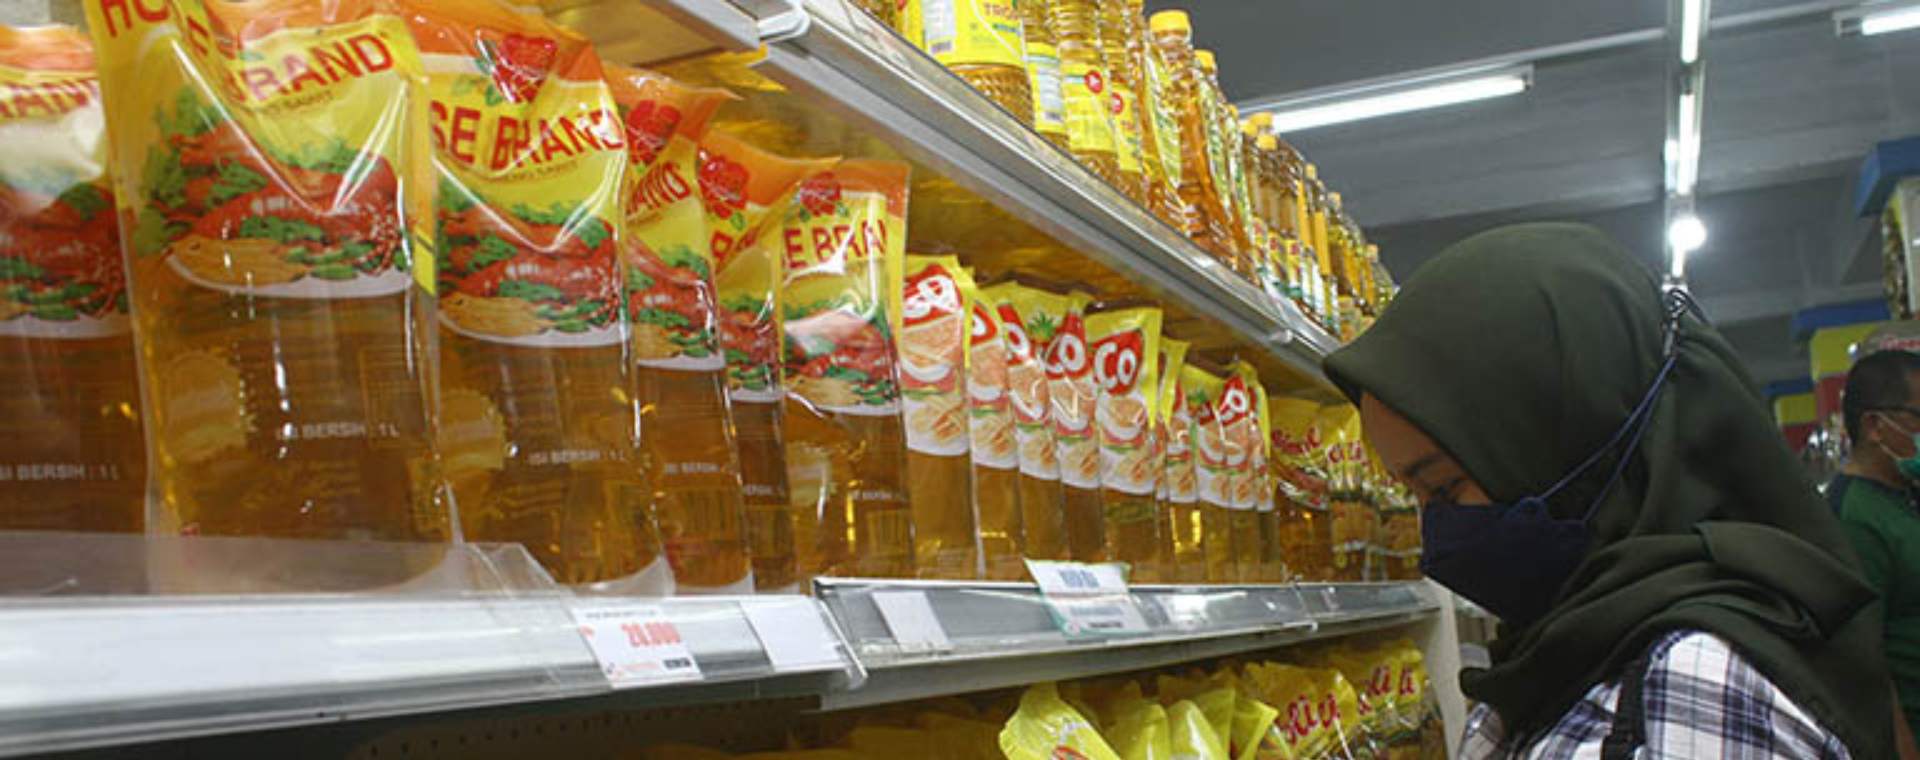 Seorang pengunjung memilih minyak goreng yang dijual di supermarket di Pontianak, Kalimantan Barat, Kamis (23/12/2021). - Antara Foto - Jessica Helena Wuysang